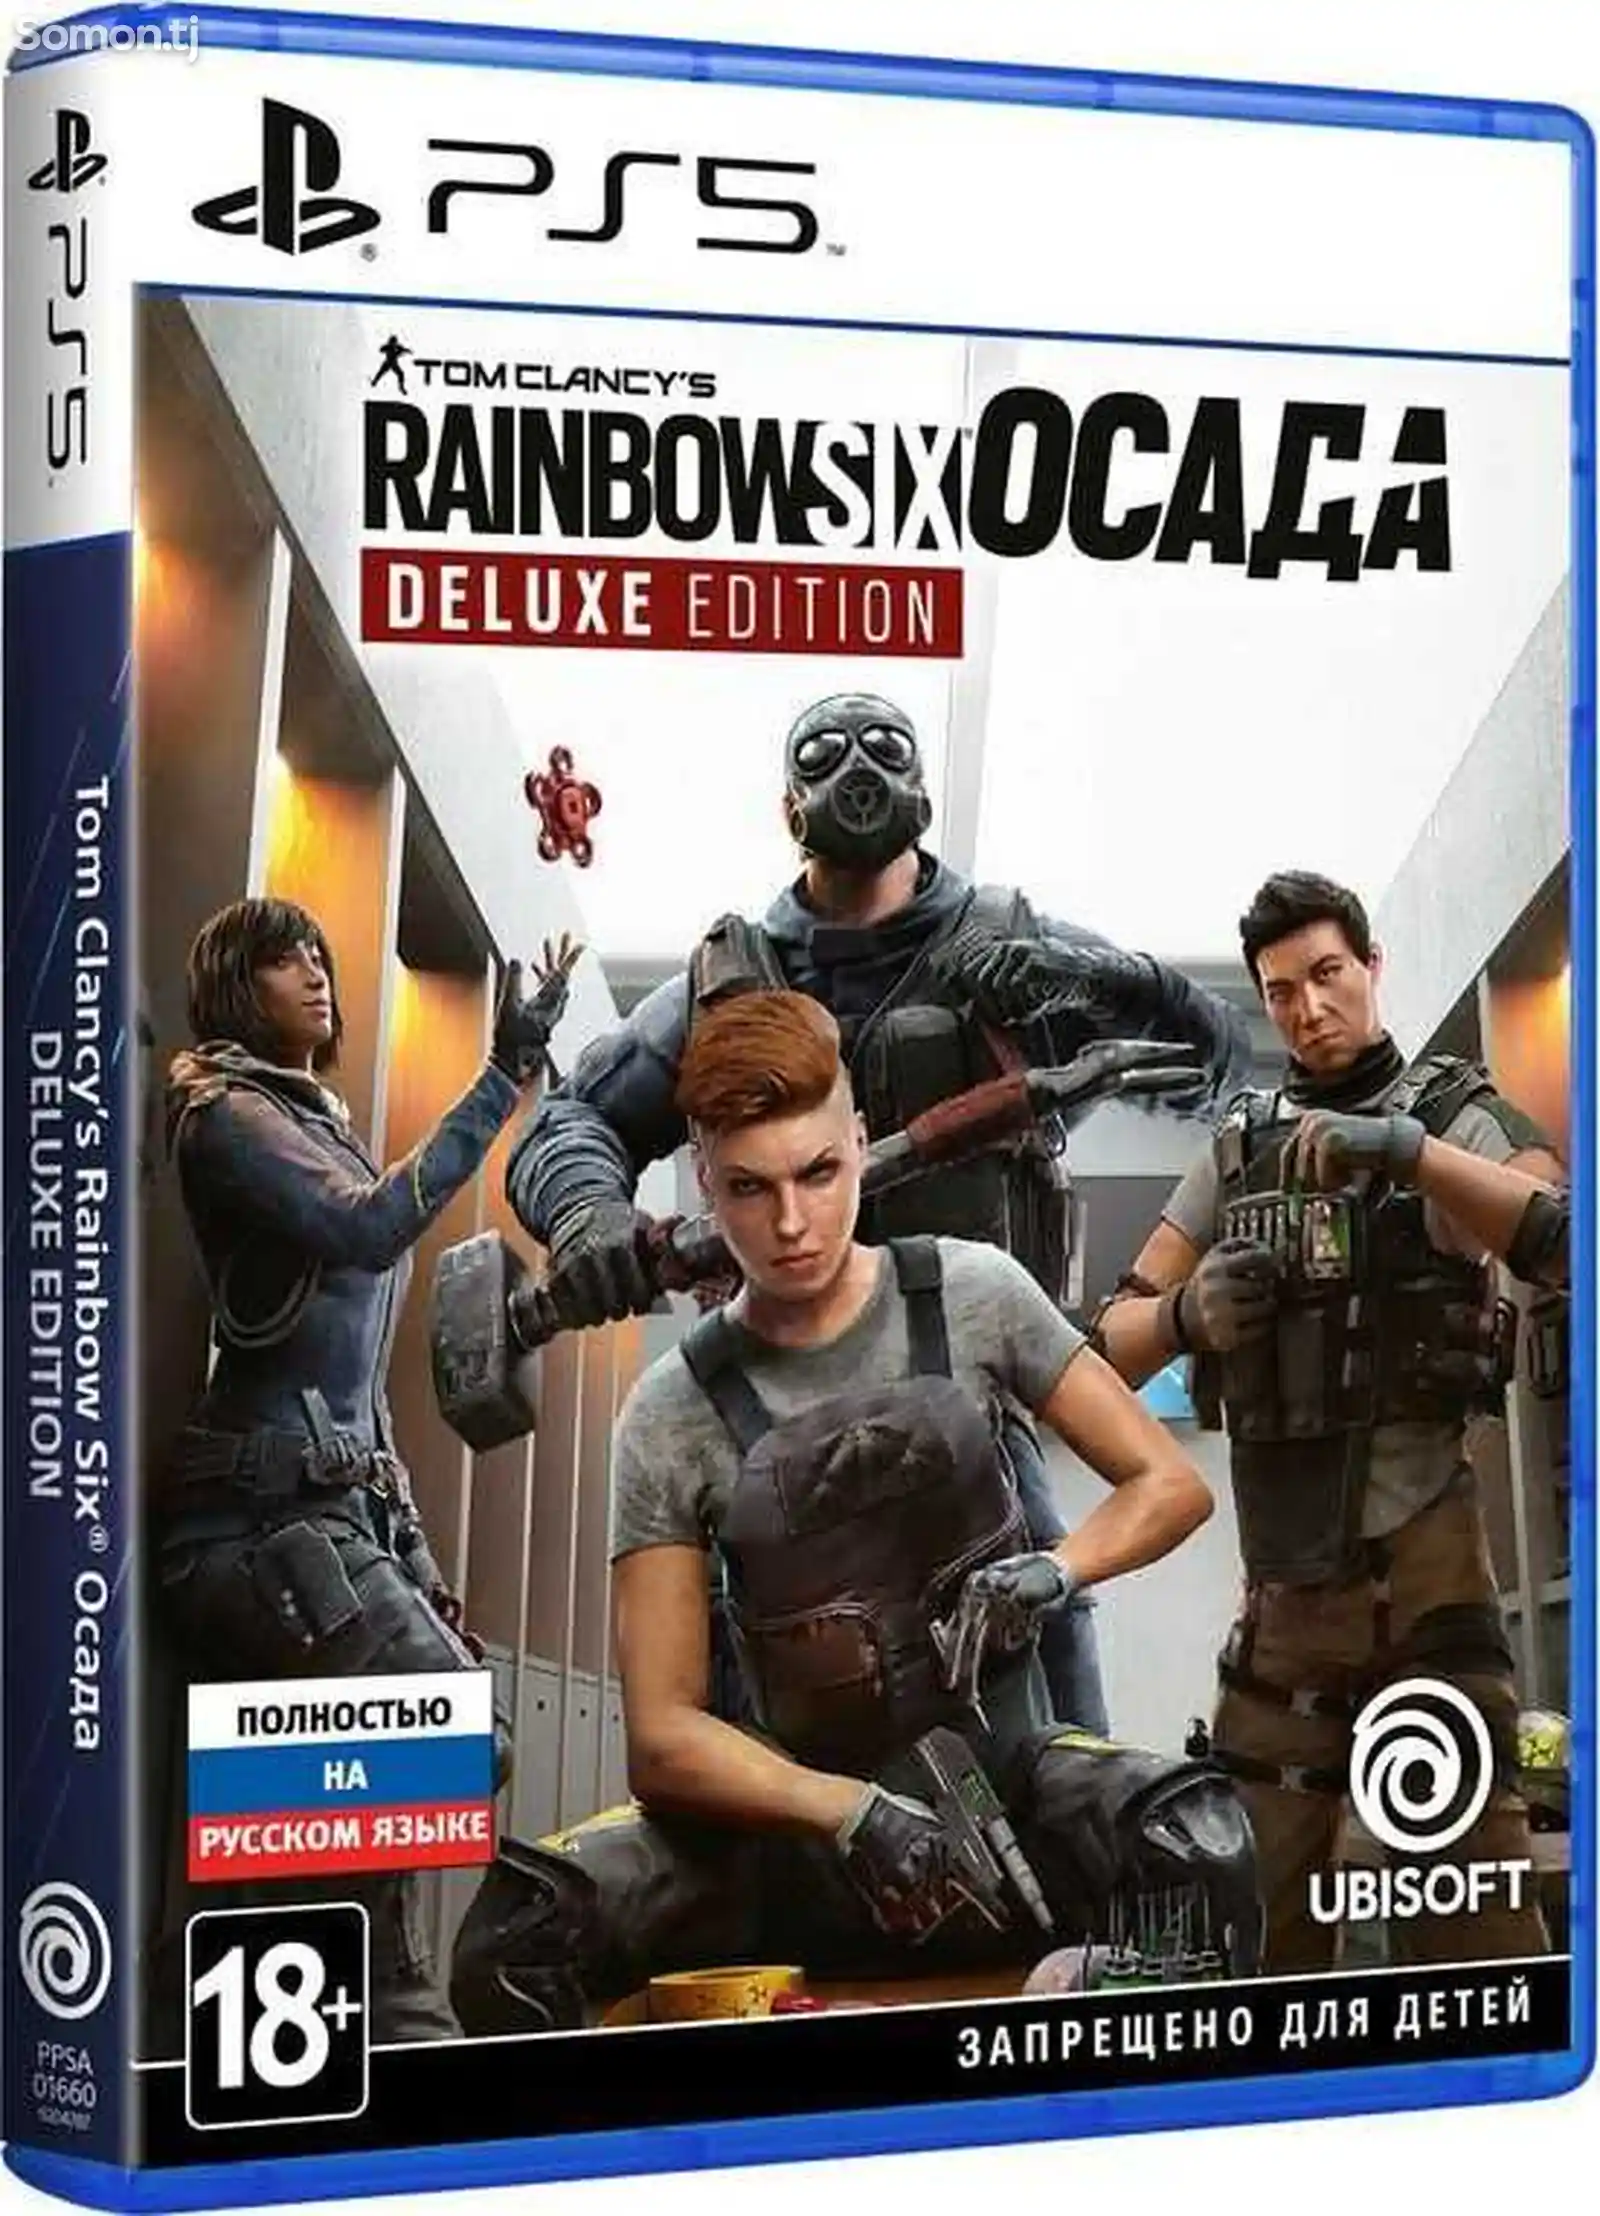 Игра Tom Clancy's Rainbow Six Осада Deluxe Edition для PS5-1